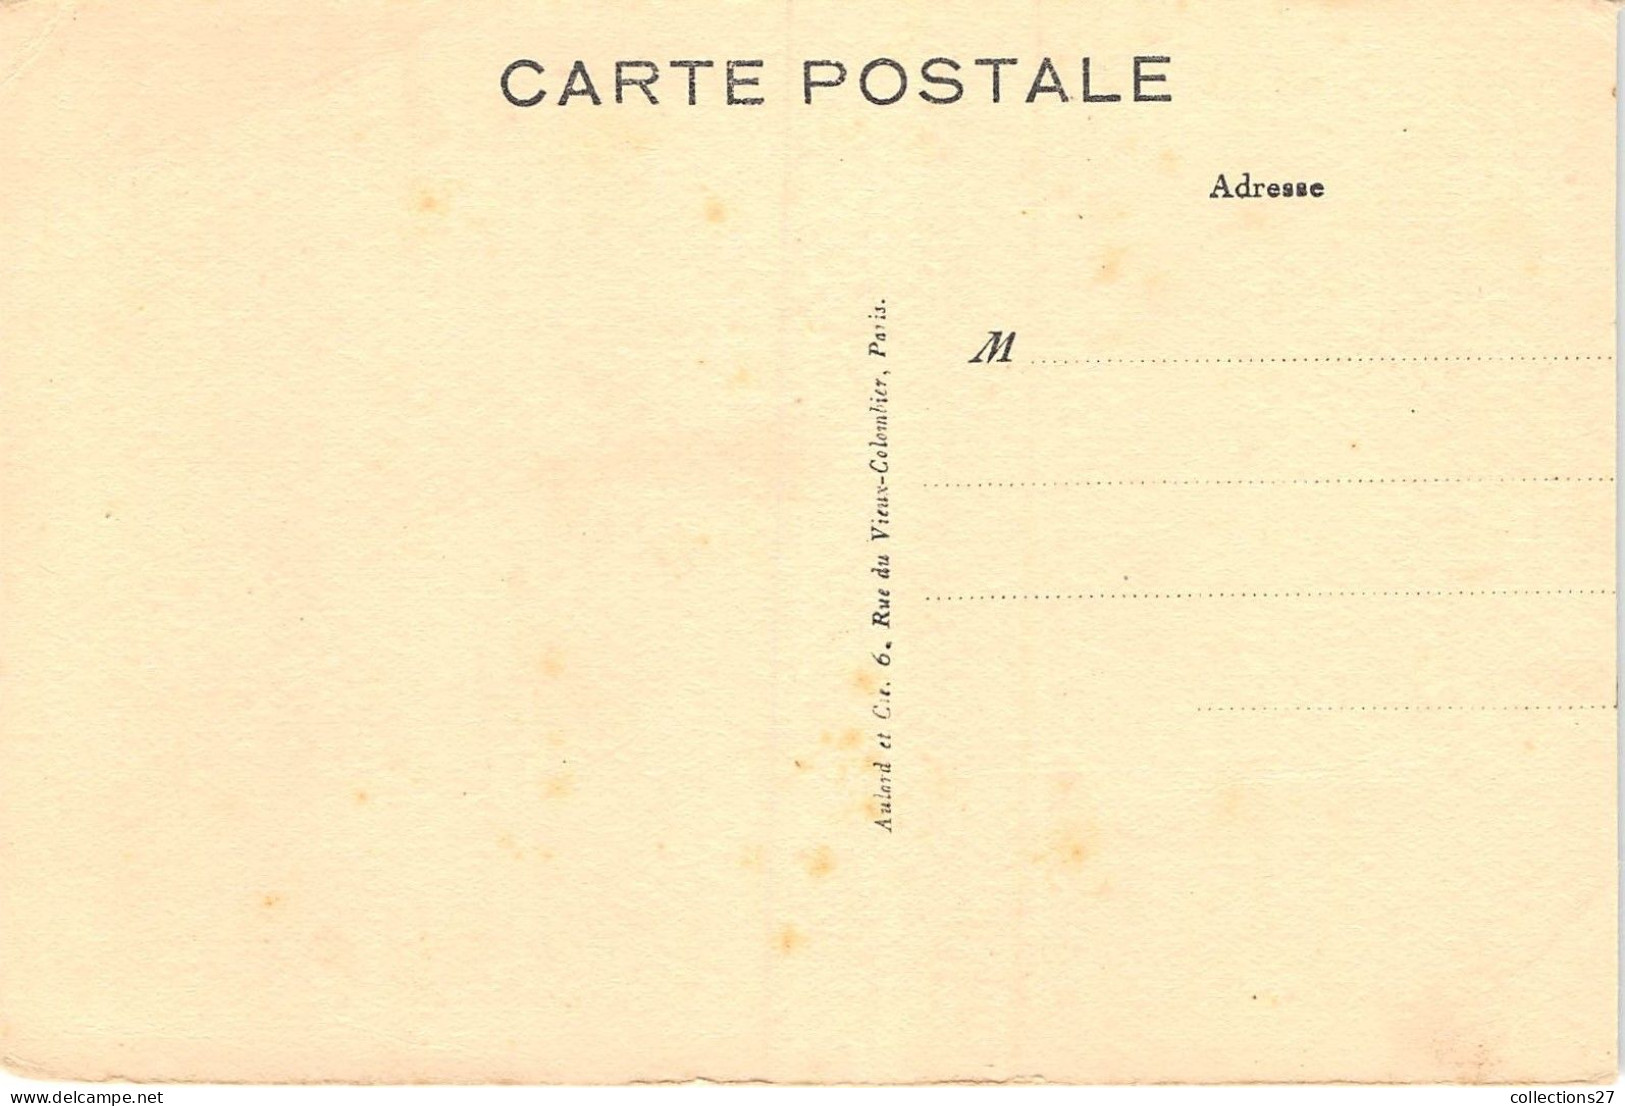 PARIS-75020- P.S.P AVRIL 1928 ETAT DES TRAVAUX 29 RUE DU RETRAIT - Arrondissement: 20